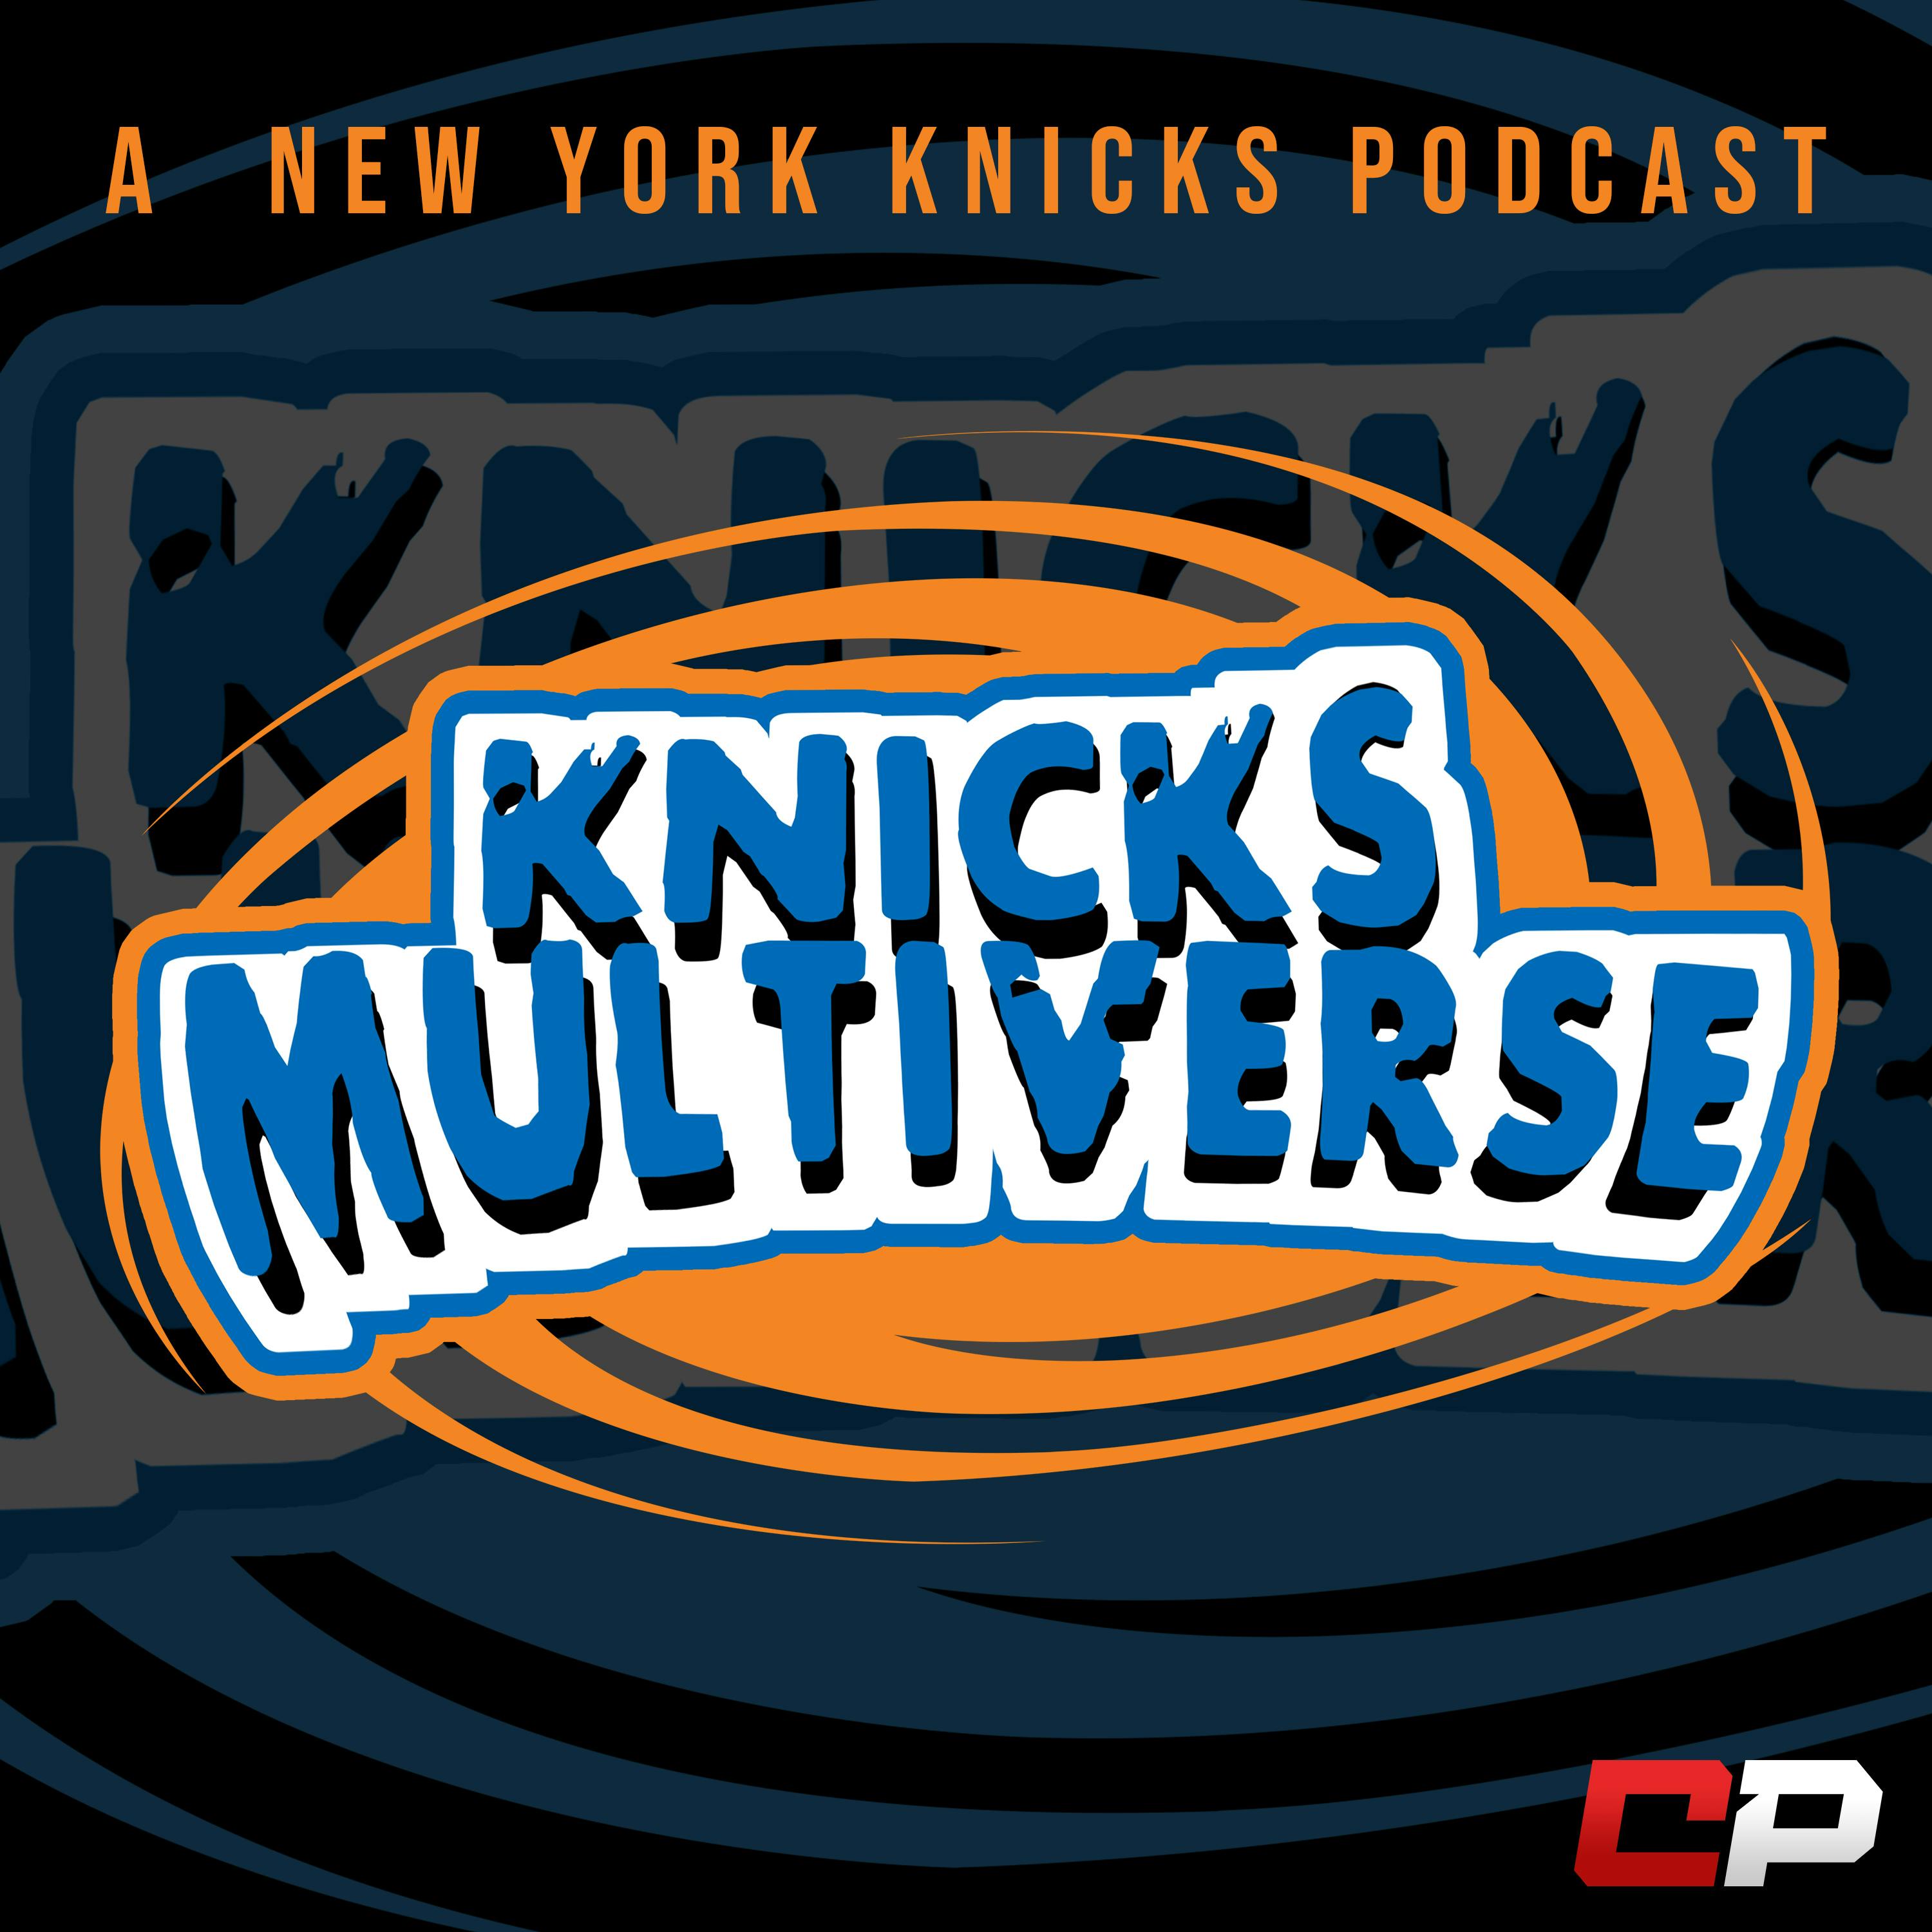 Knicks Multiverse